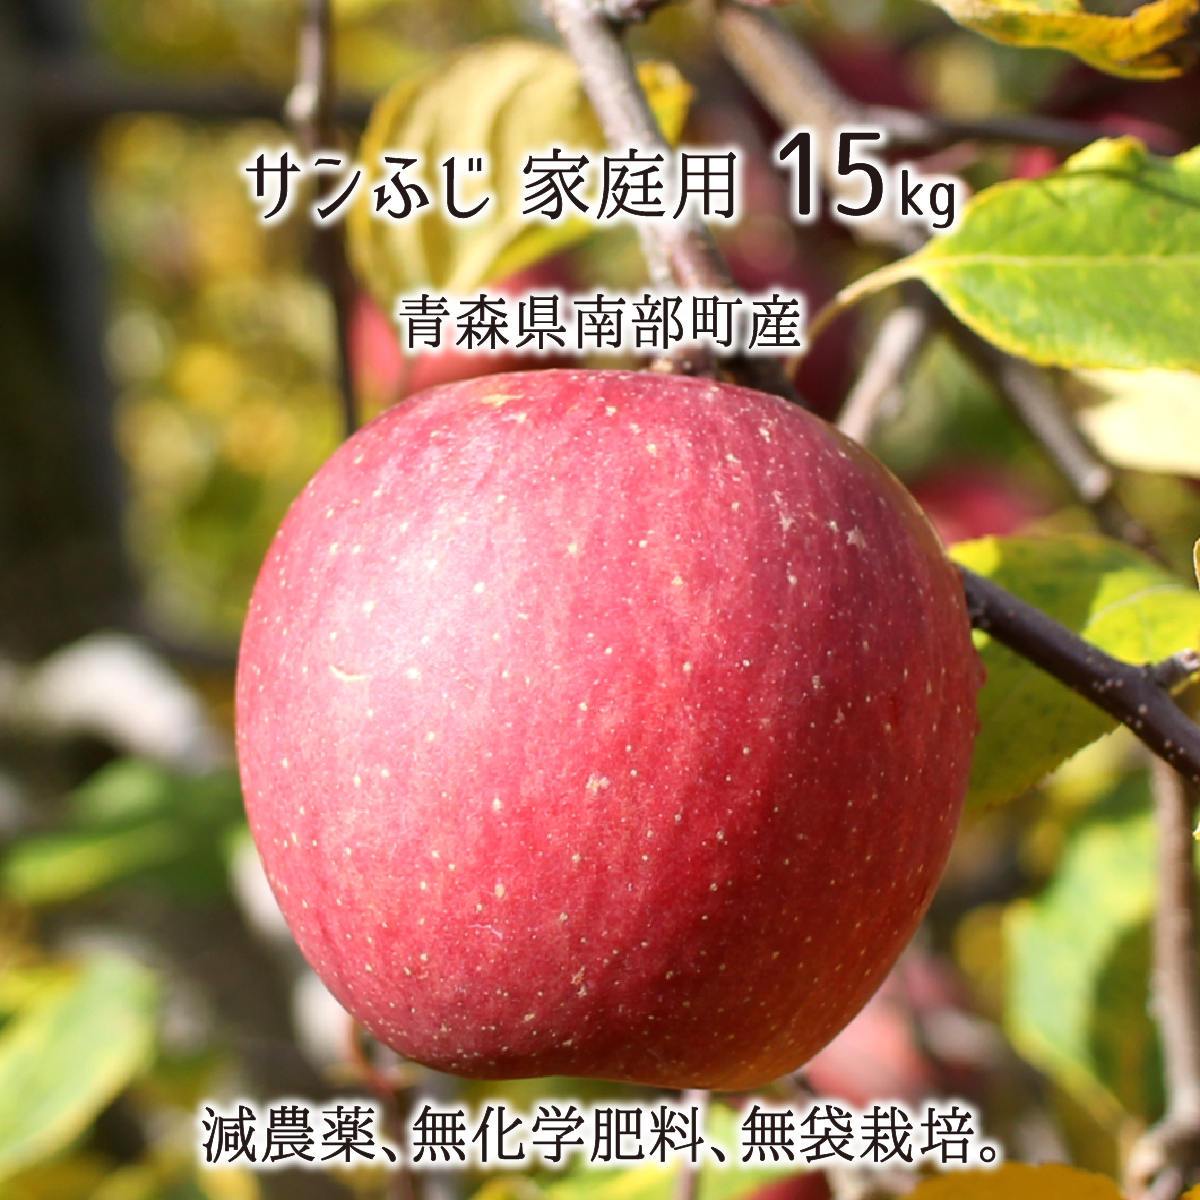 サンふじ 訳あり 15kg 減農薬 無化学肥料 青森県南部町産 りんご 家庭